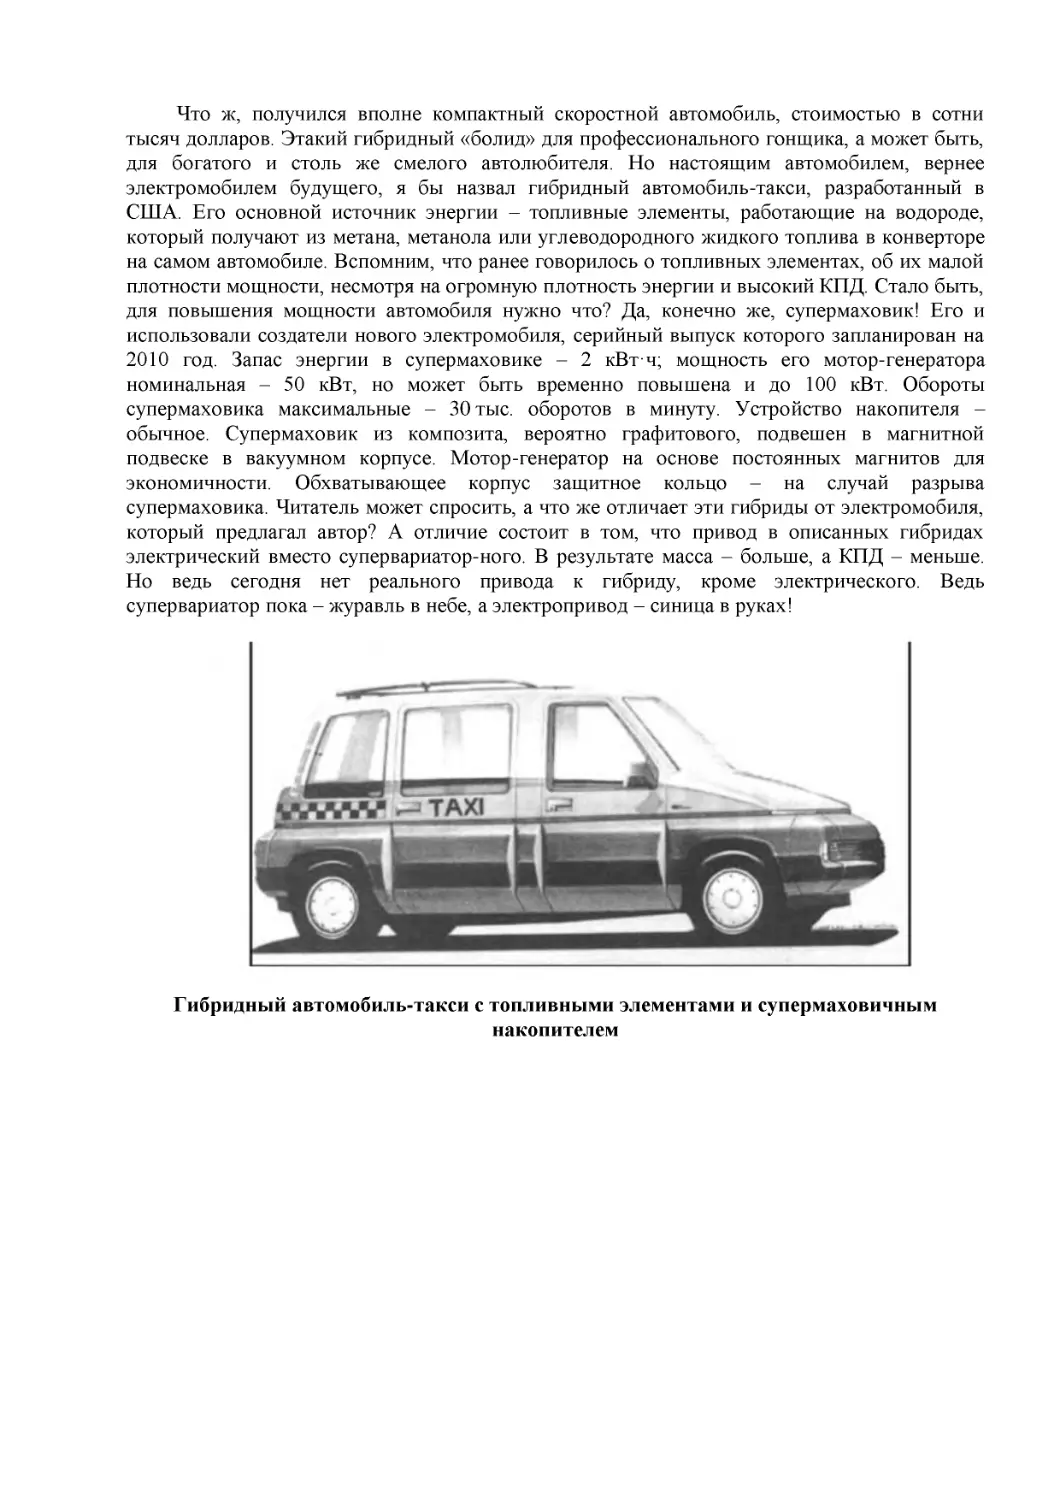 Гибридный автомобиль-такси с топливными элементами и супермаховичным накопителем